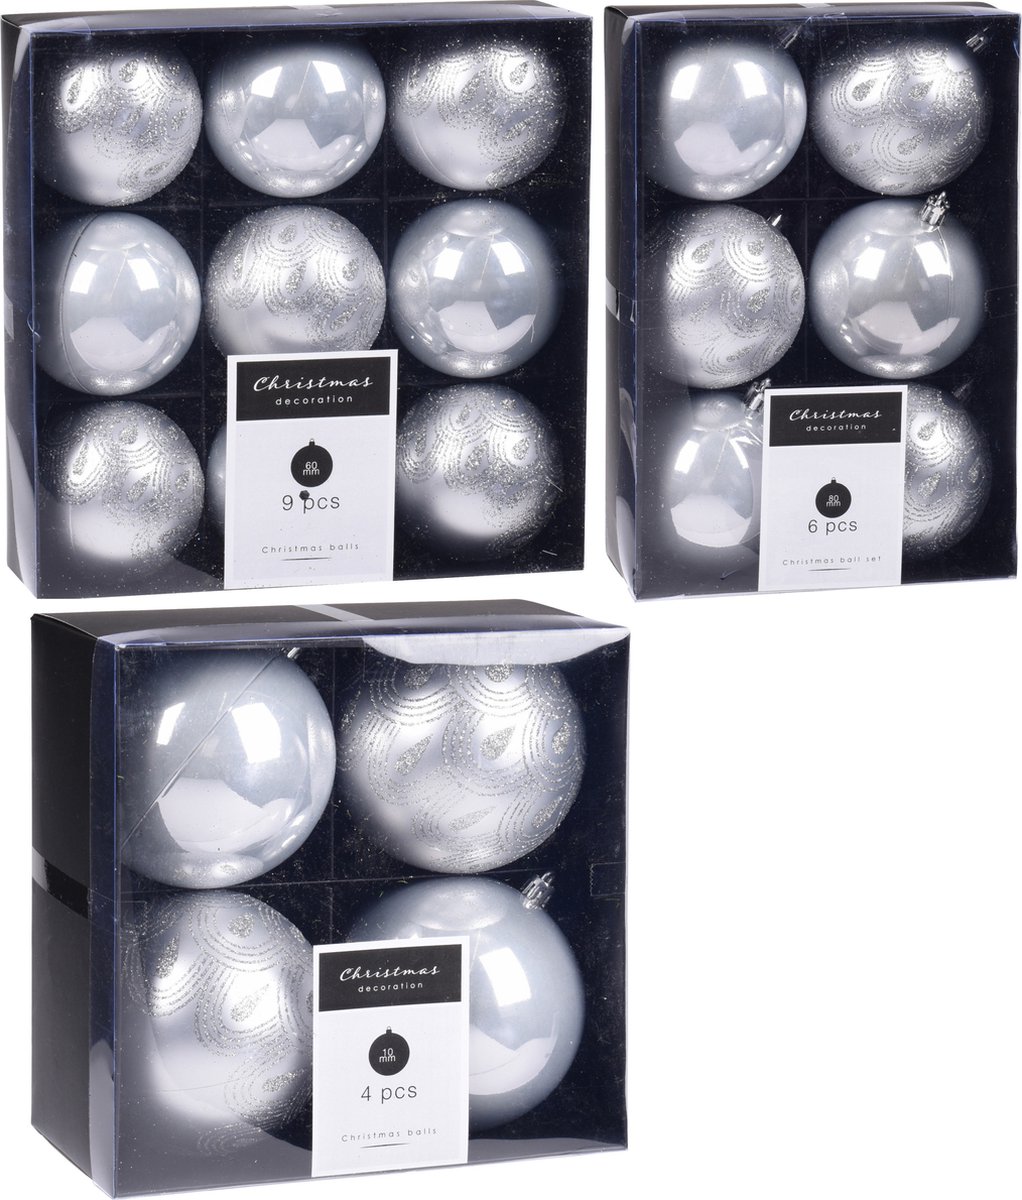 Kerstversiering kunststof kerstballen zilver 6-8-10 cm pakket van 19x stuks - Kerstboomversiering - Luxe finish motief